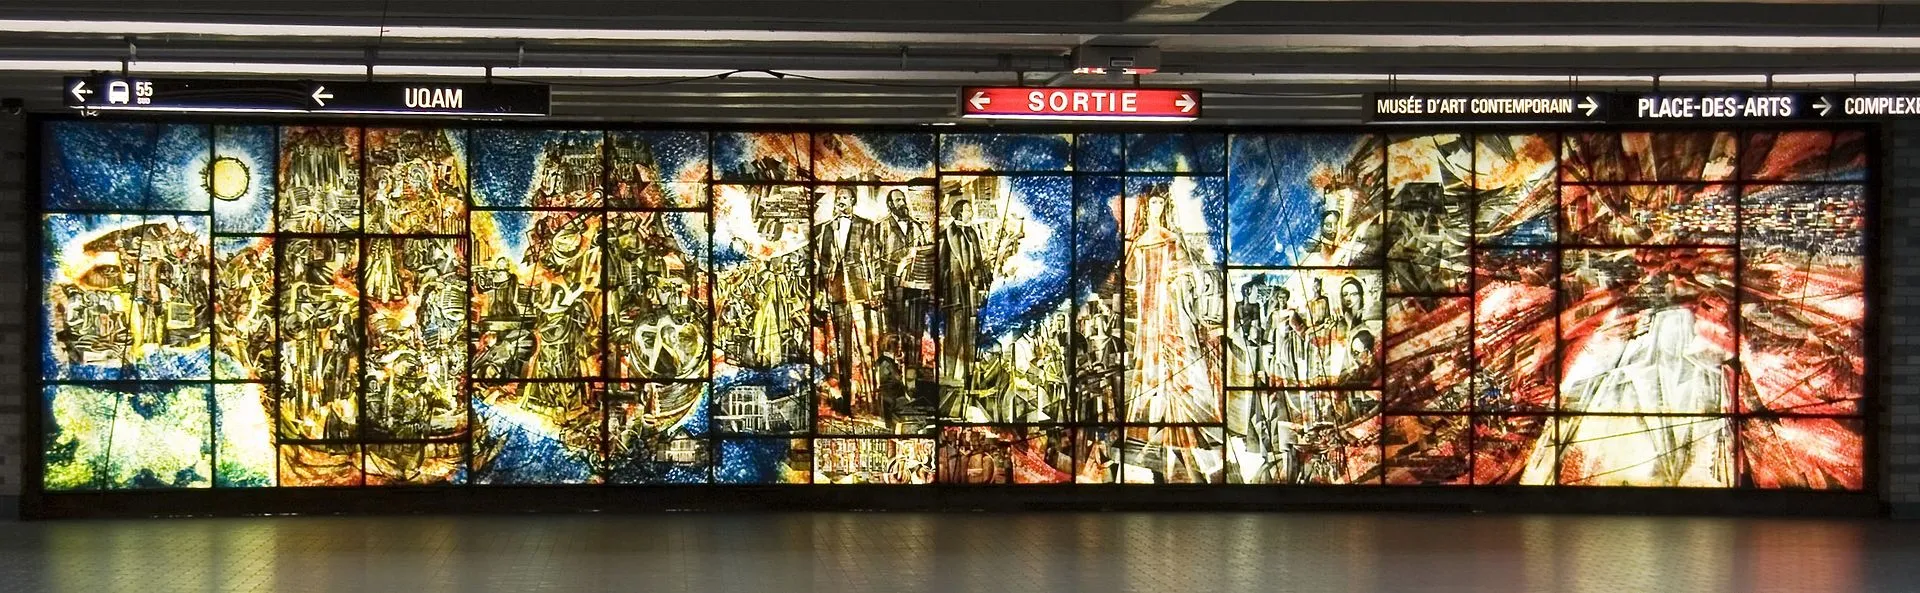 Murale de Frederick Back, station de métro Place-des-Arts 
©EMDX — Travail personnel
CC BY-SA 3.0